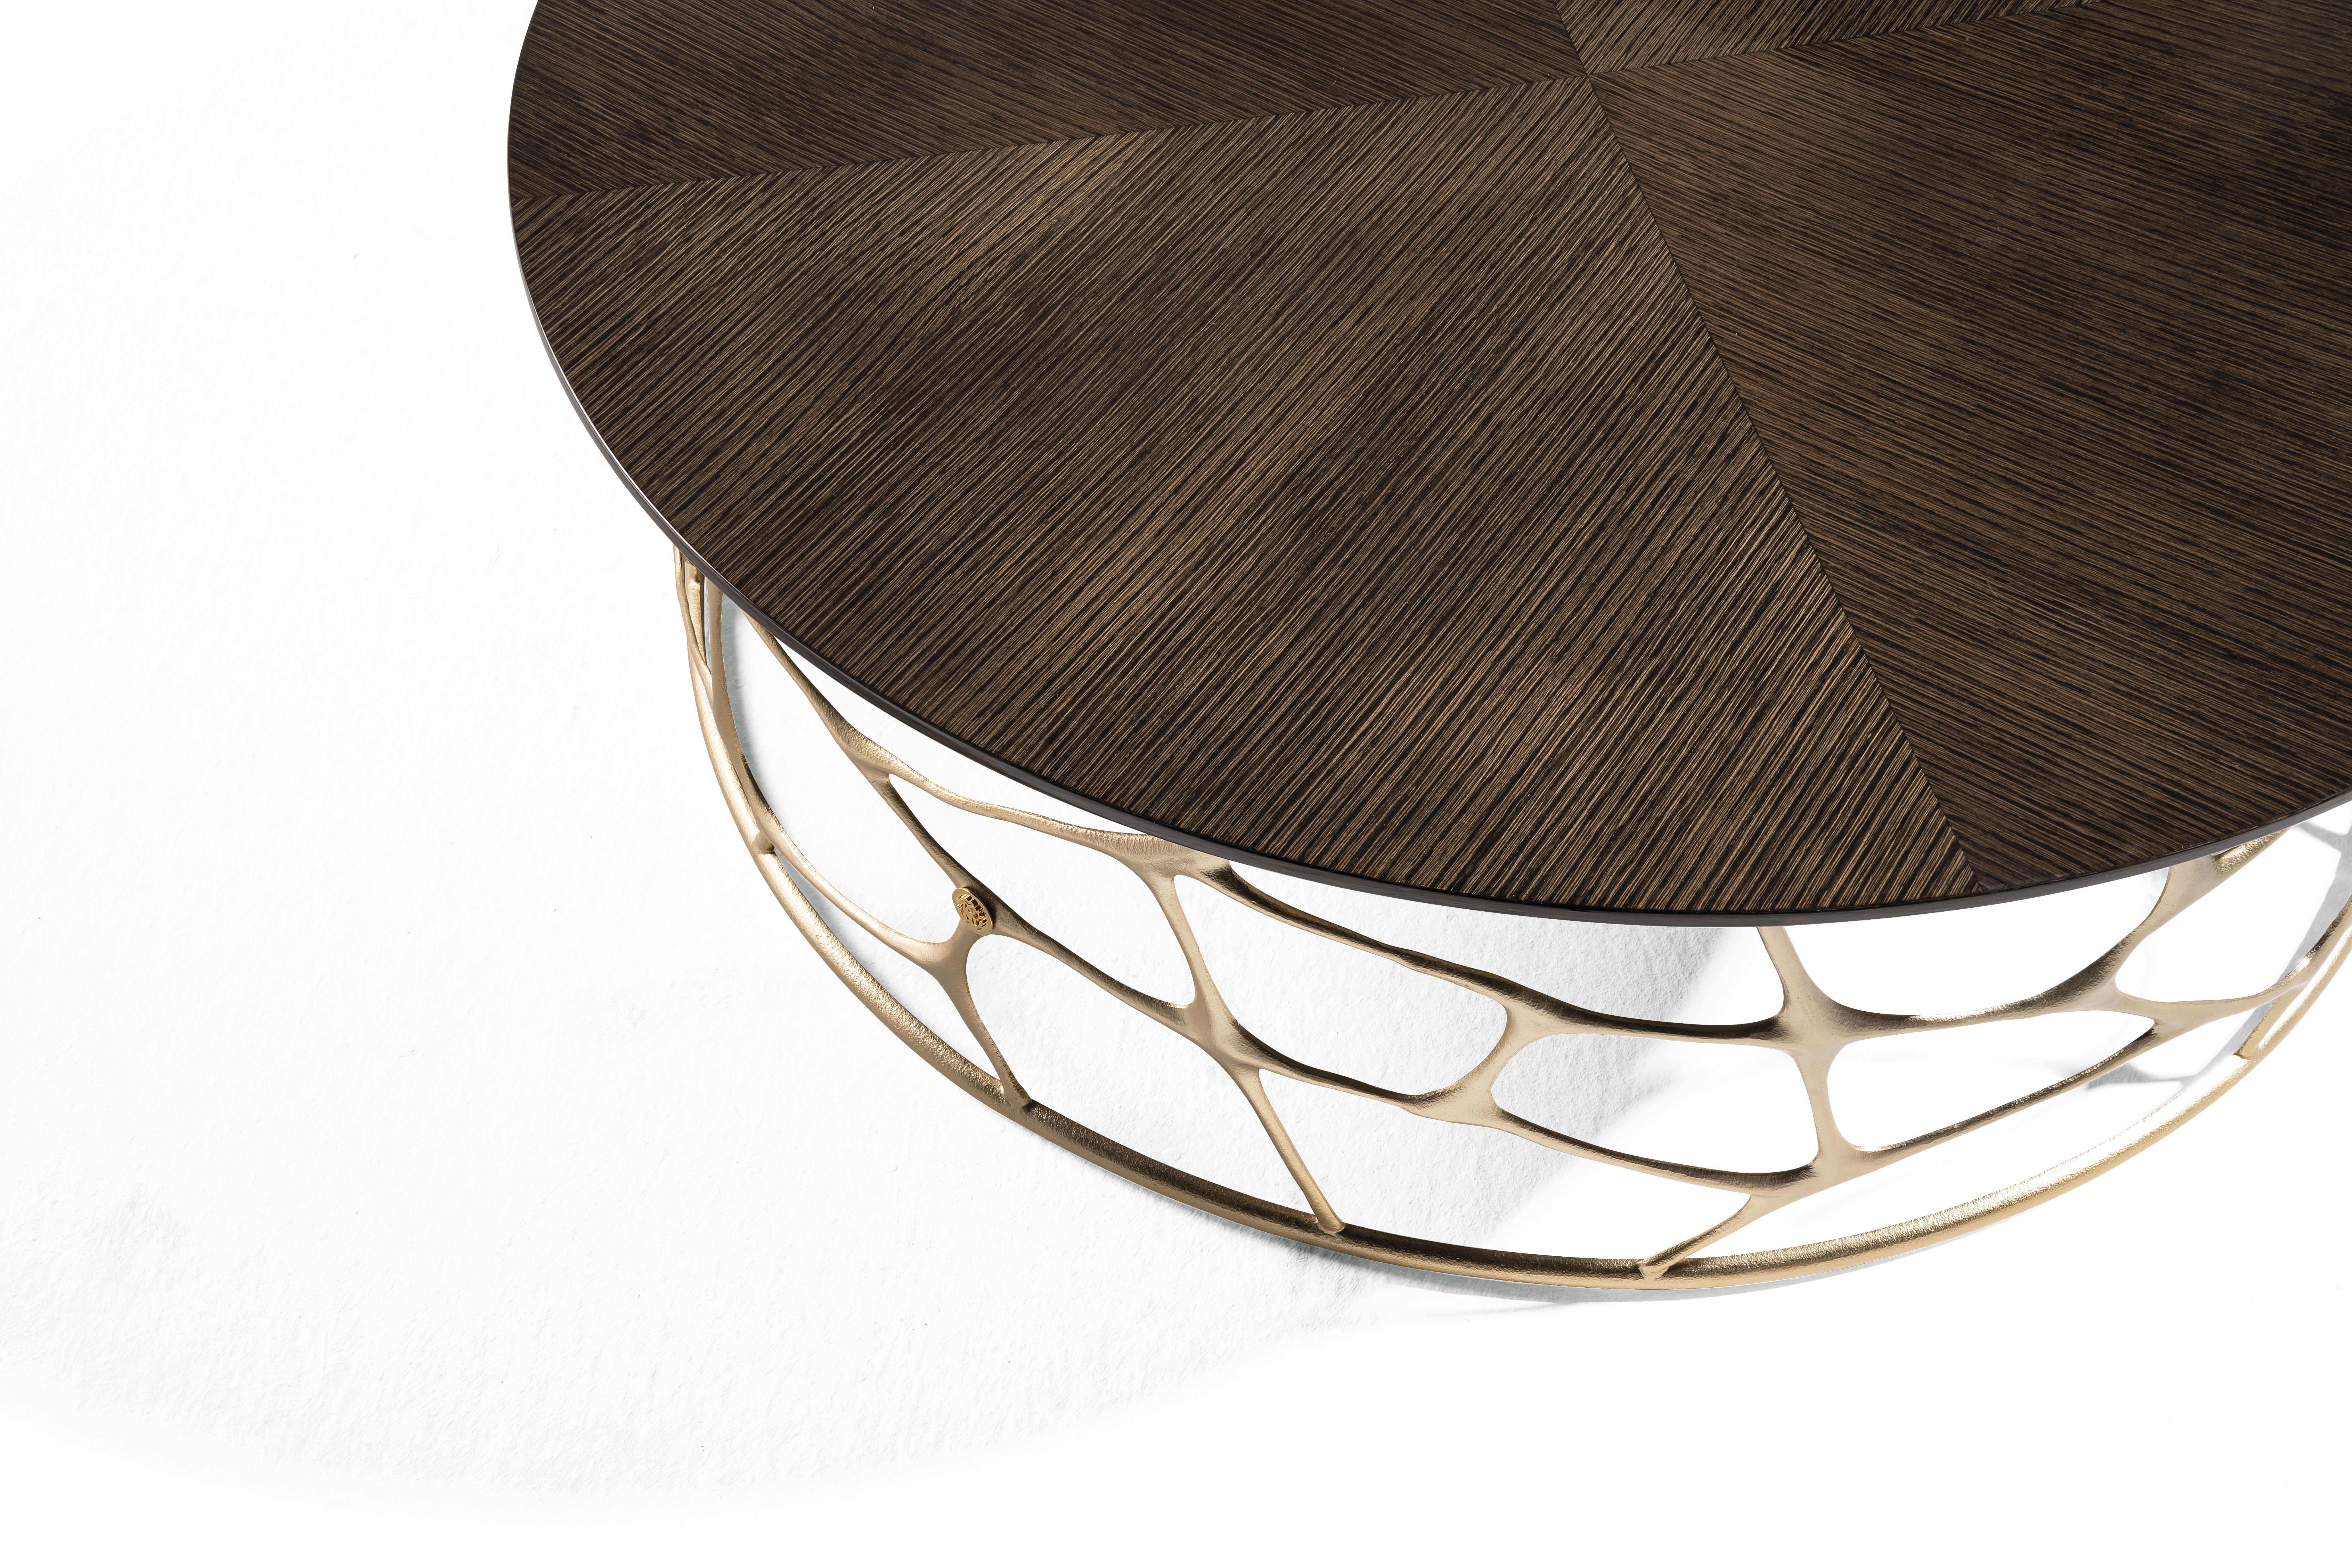 Der kleine Tisch Sioraf mit seiner eleganten Marmorplatte aus Bambus in einem originellen Grünton verfügt über ein spezielles Untergestell aus handgefertigtem Messingguss, das von Hand gemeißelt und vergoldet wurde. Ein wertvolles Möbelstück, das